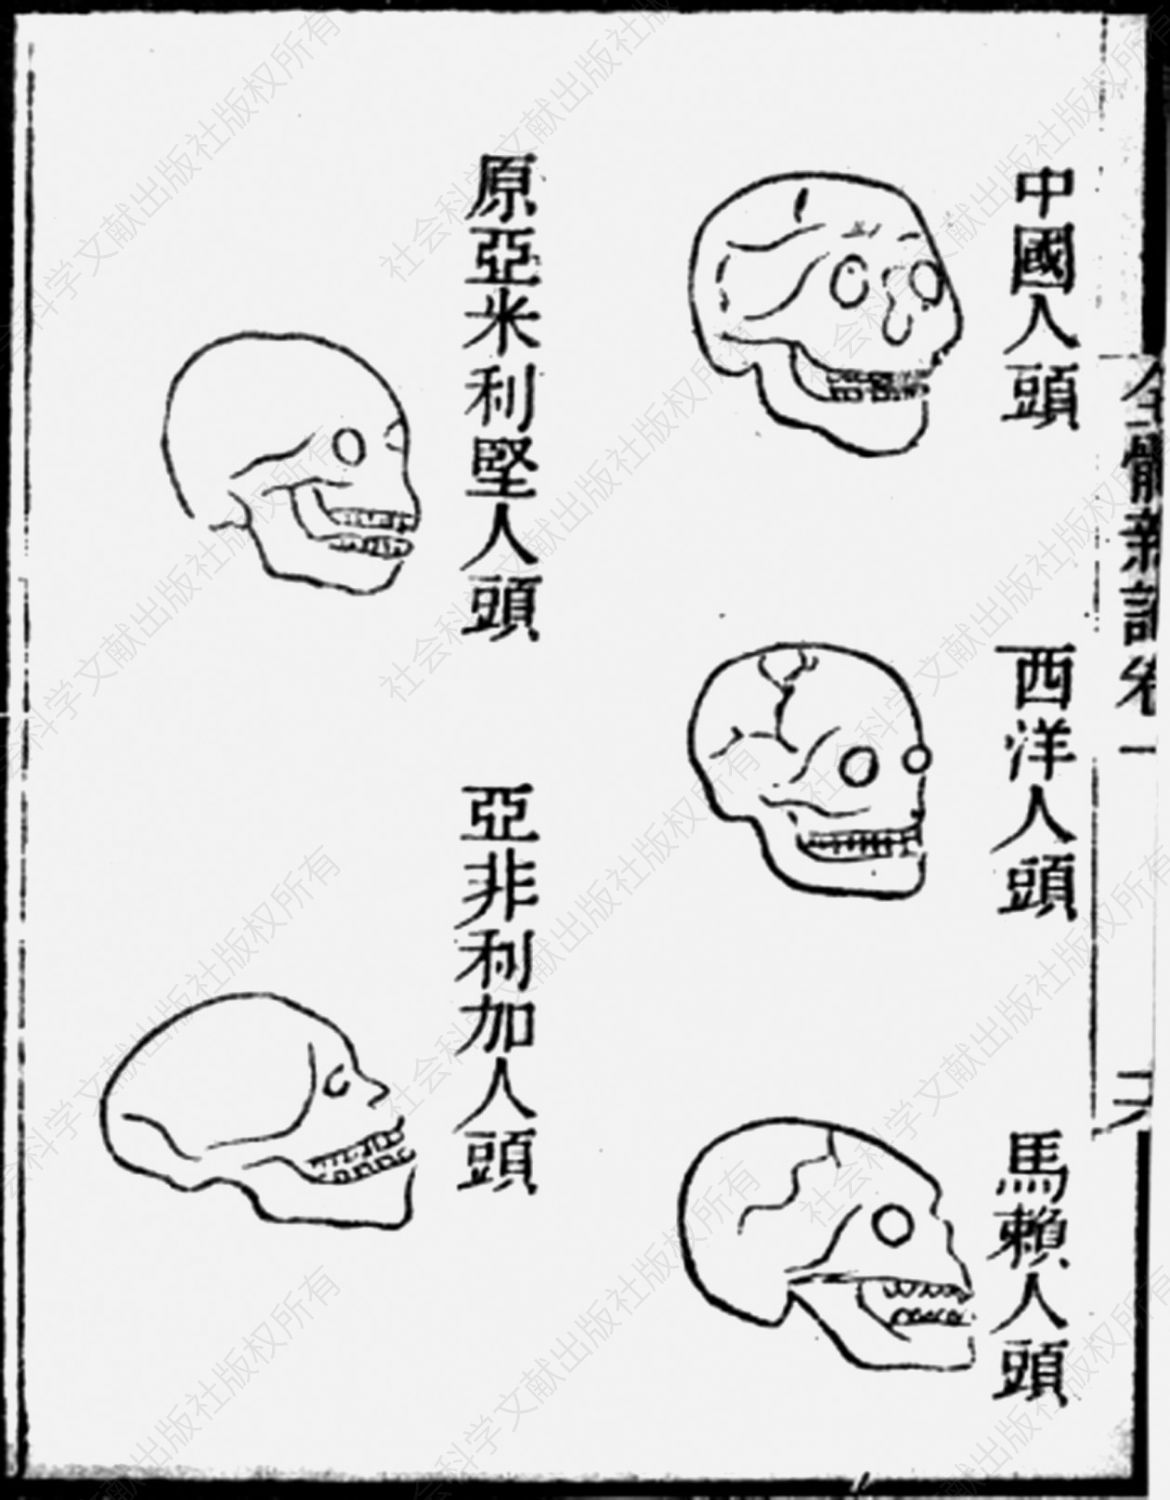 图6-1 《全体新论》中之“五种人”头骨图